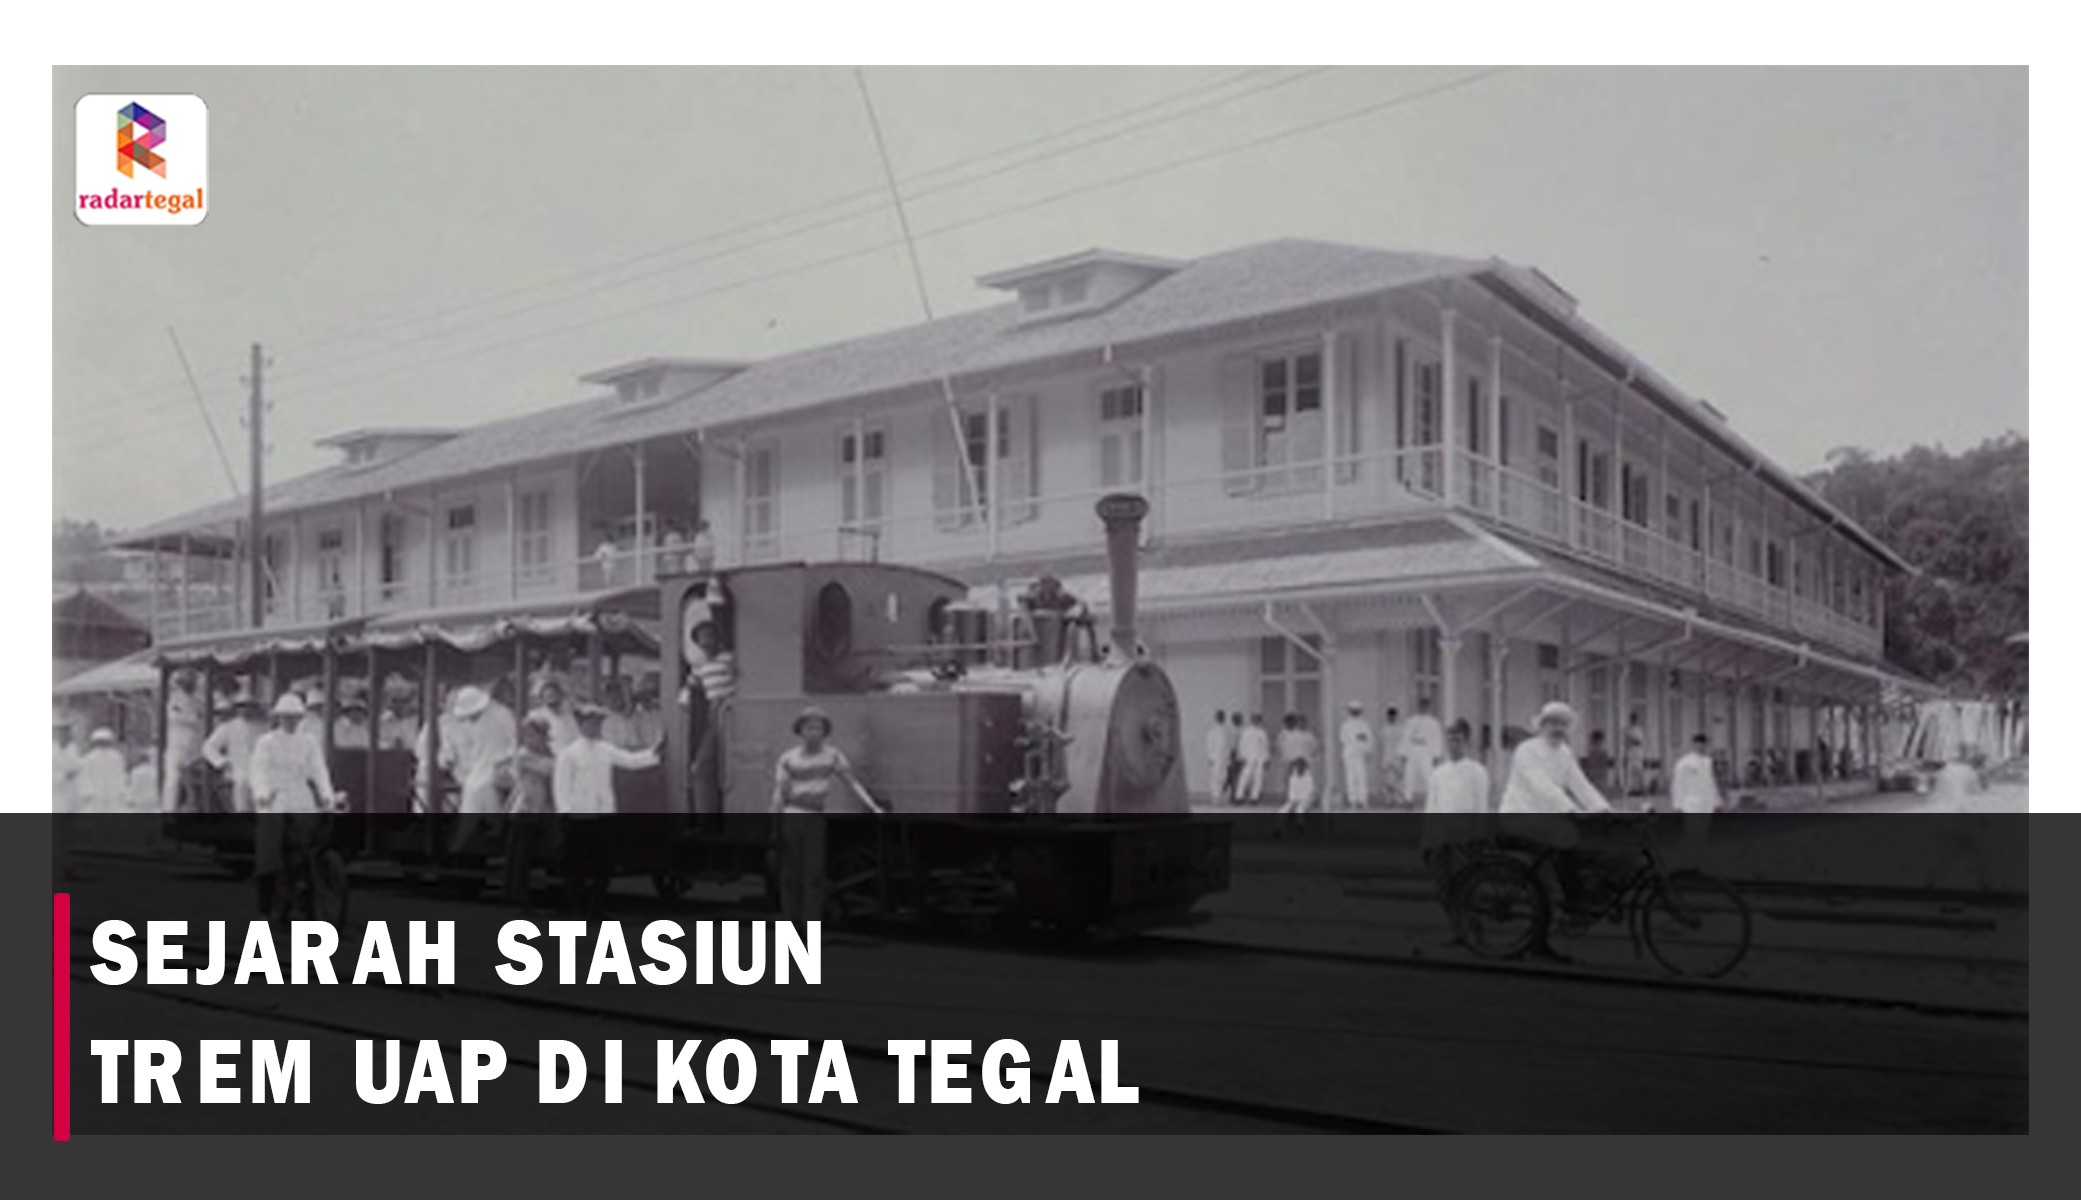 Sejarah Stasiun Trem Uap di Tegal, Bukti Kota Bahari Maju di Era Kolonial Belanda